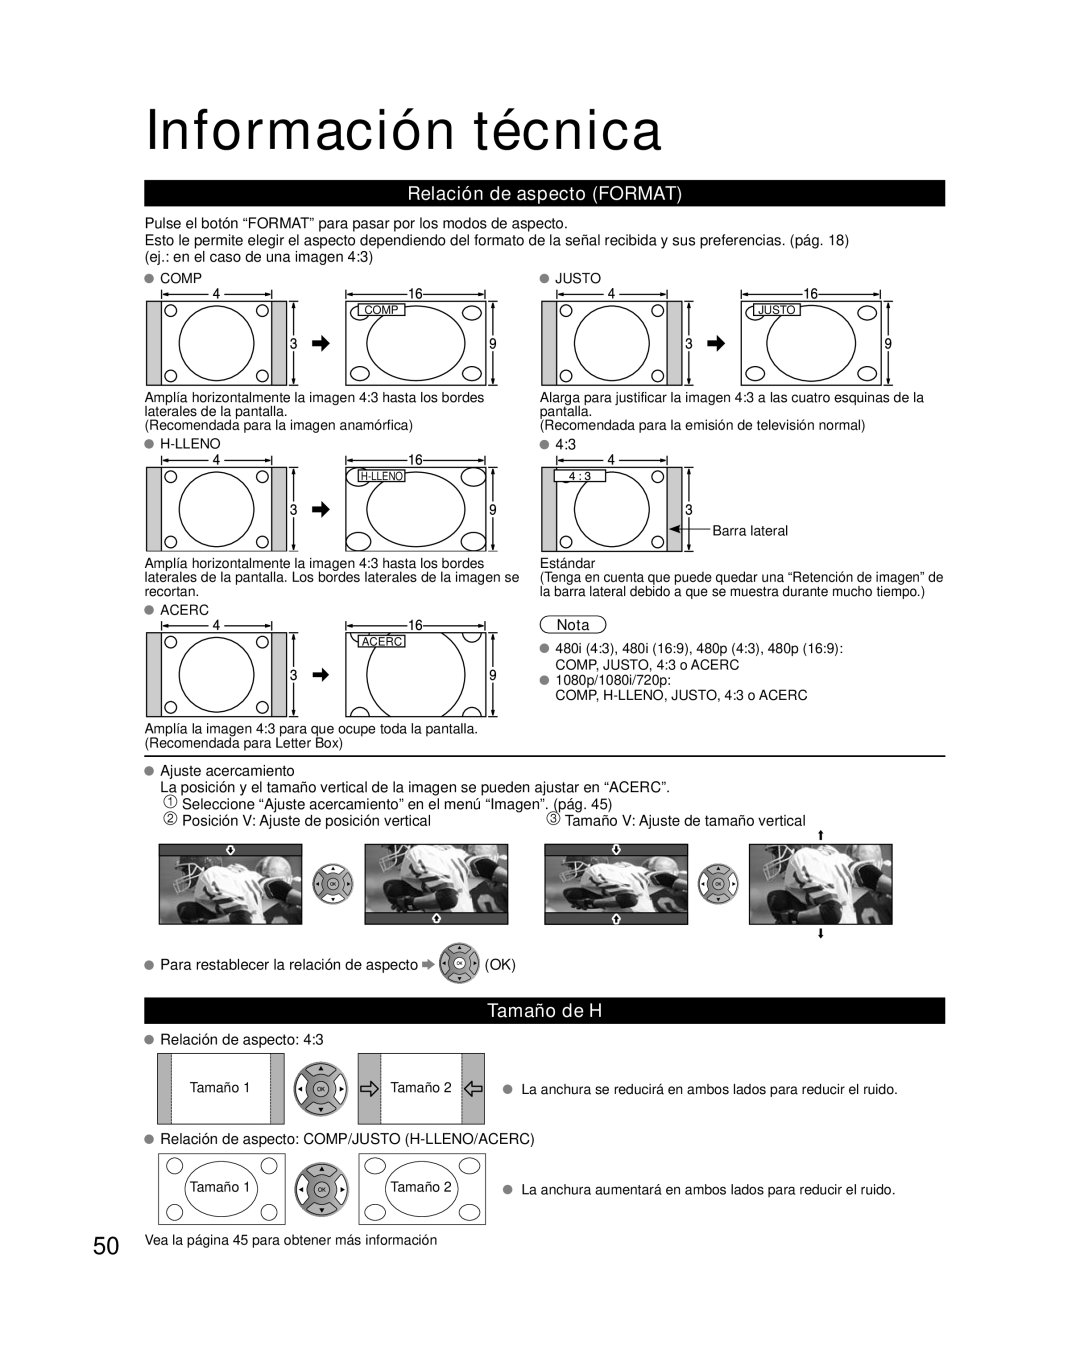 Panasonic TC-L42E30, TC-L37E3, TC-L32E3 owner manual Información técnica, Relación de aspecto FORMAT, Tamaño de H, Nota 